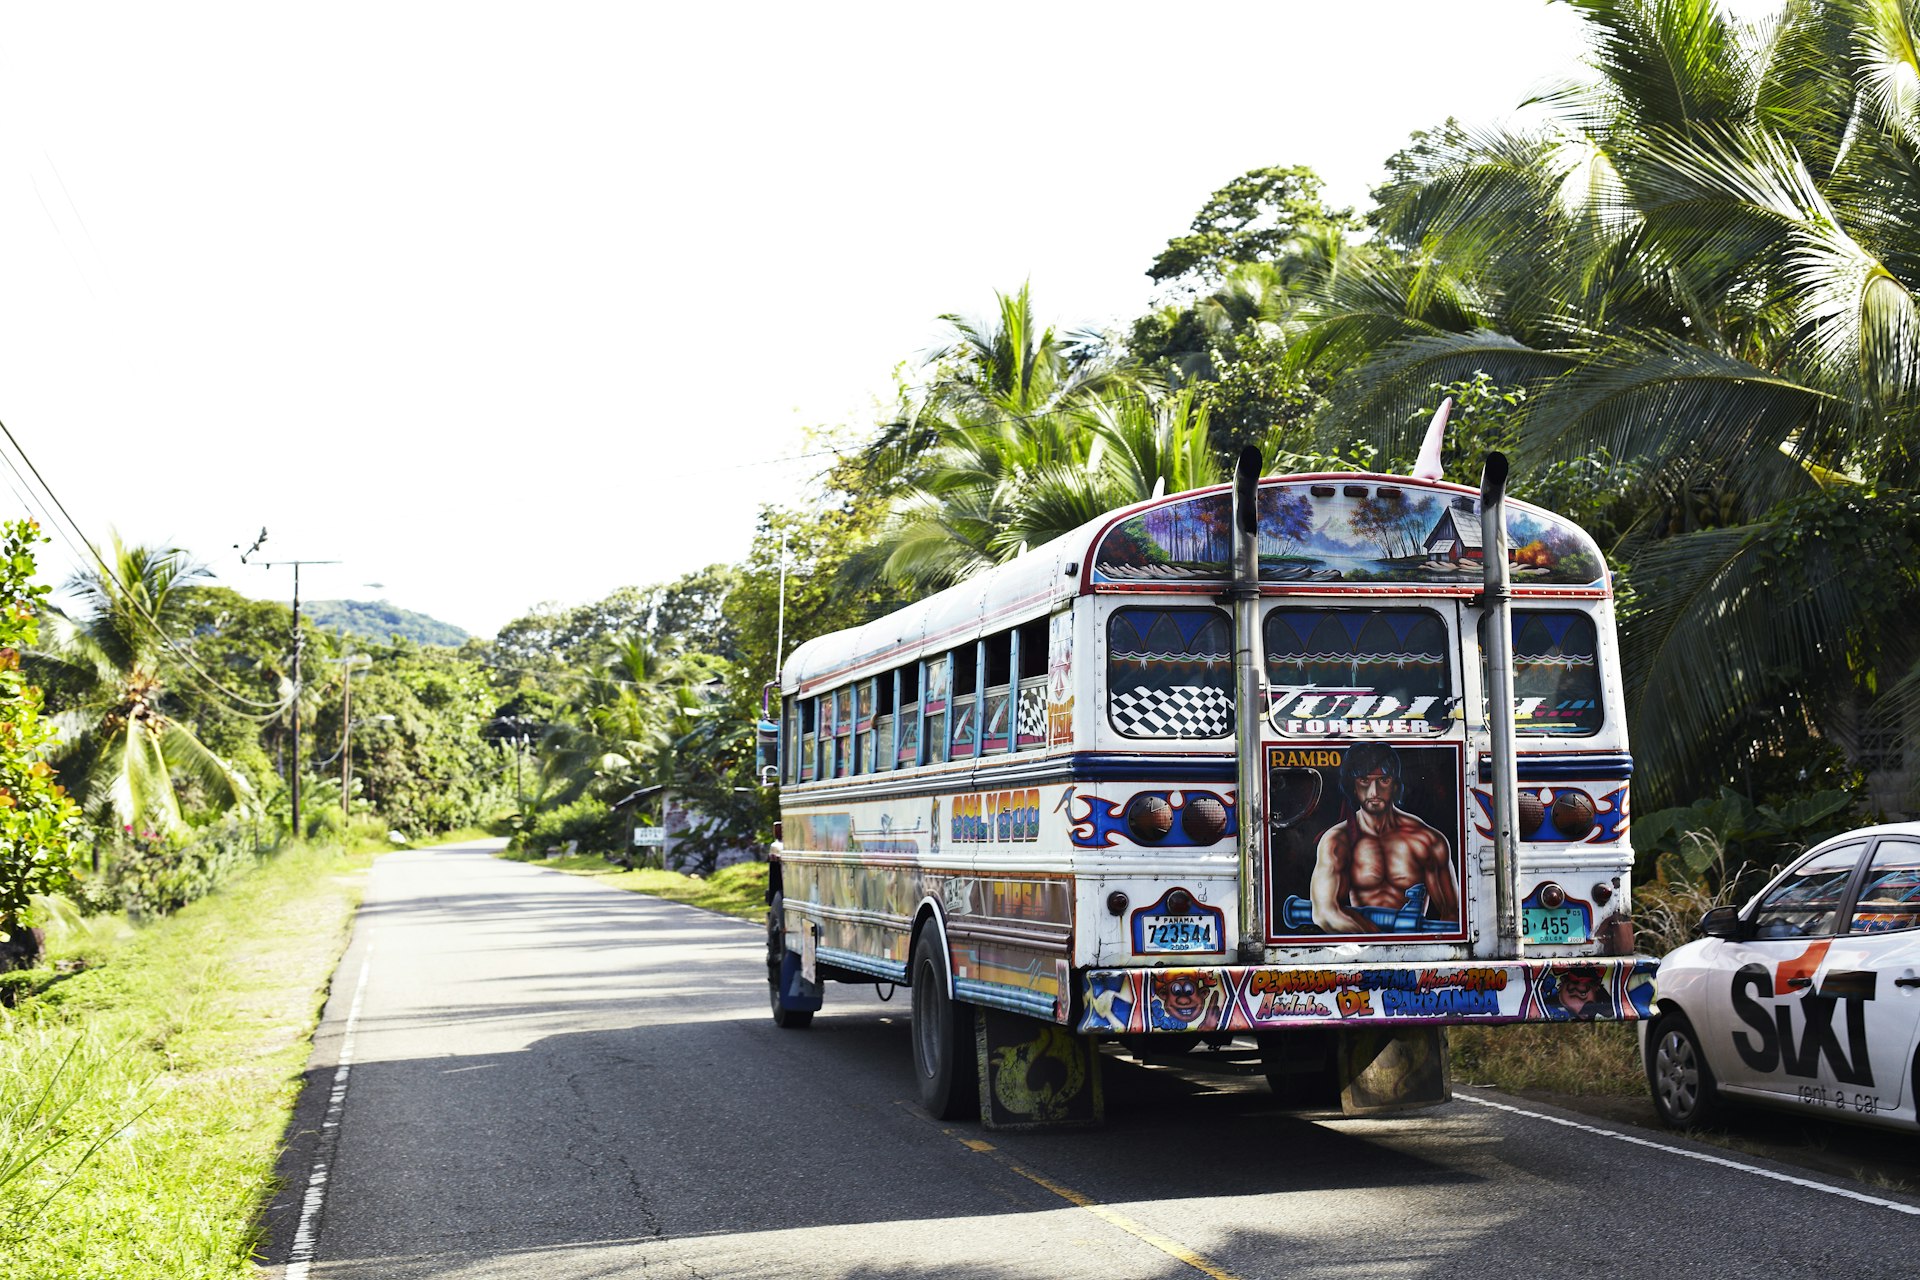 Painted public bus on road around Portobelo in Panama